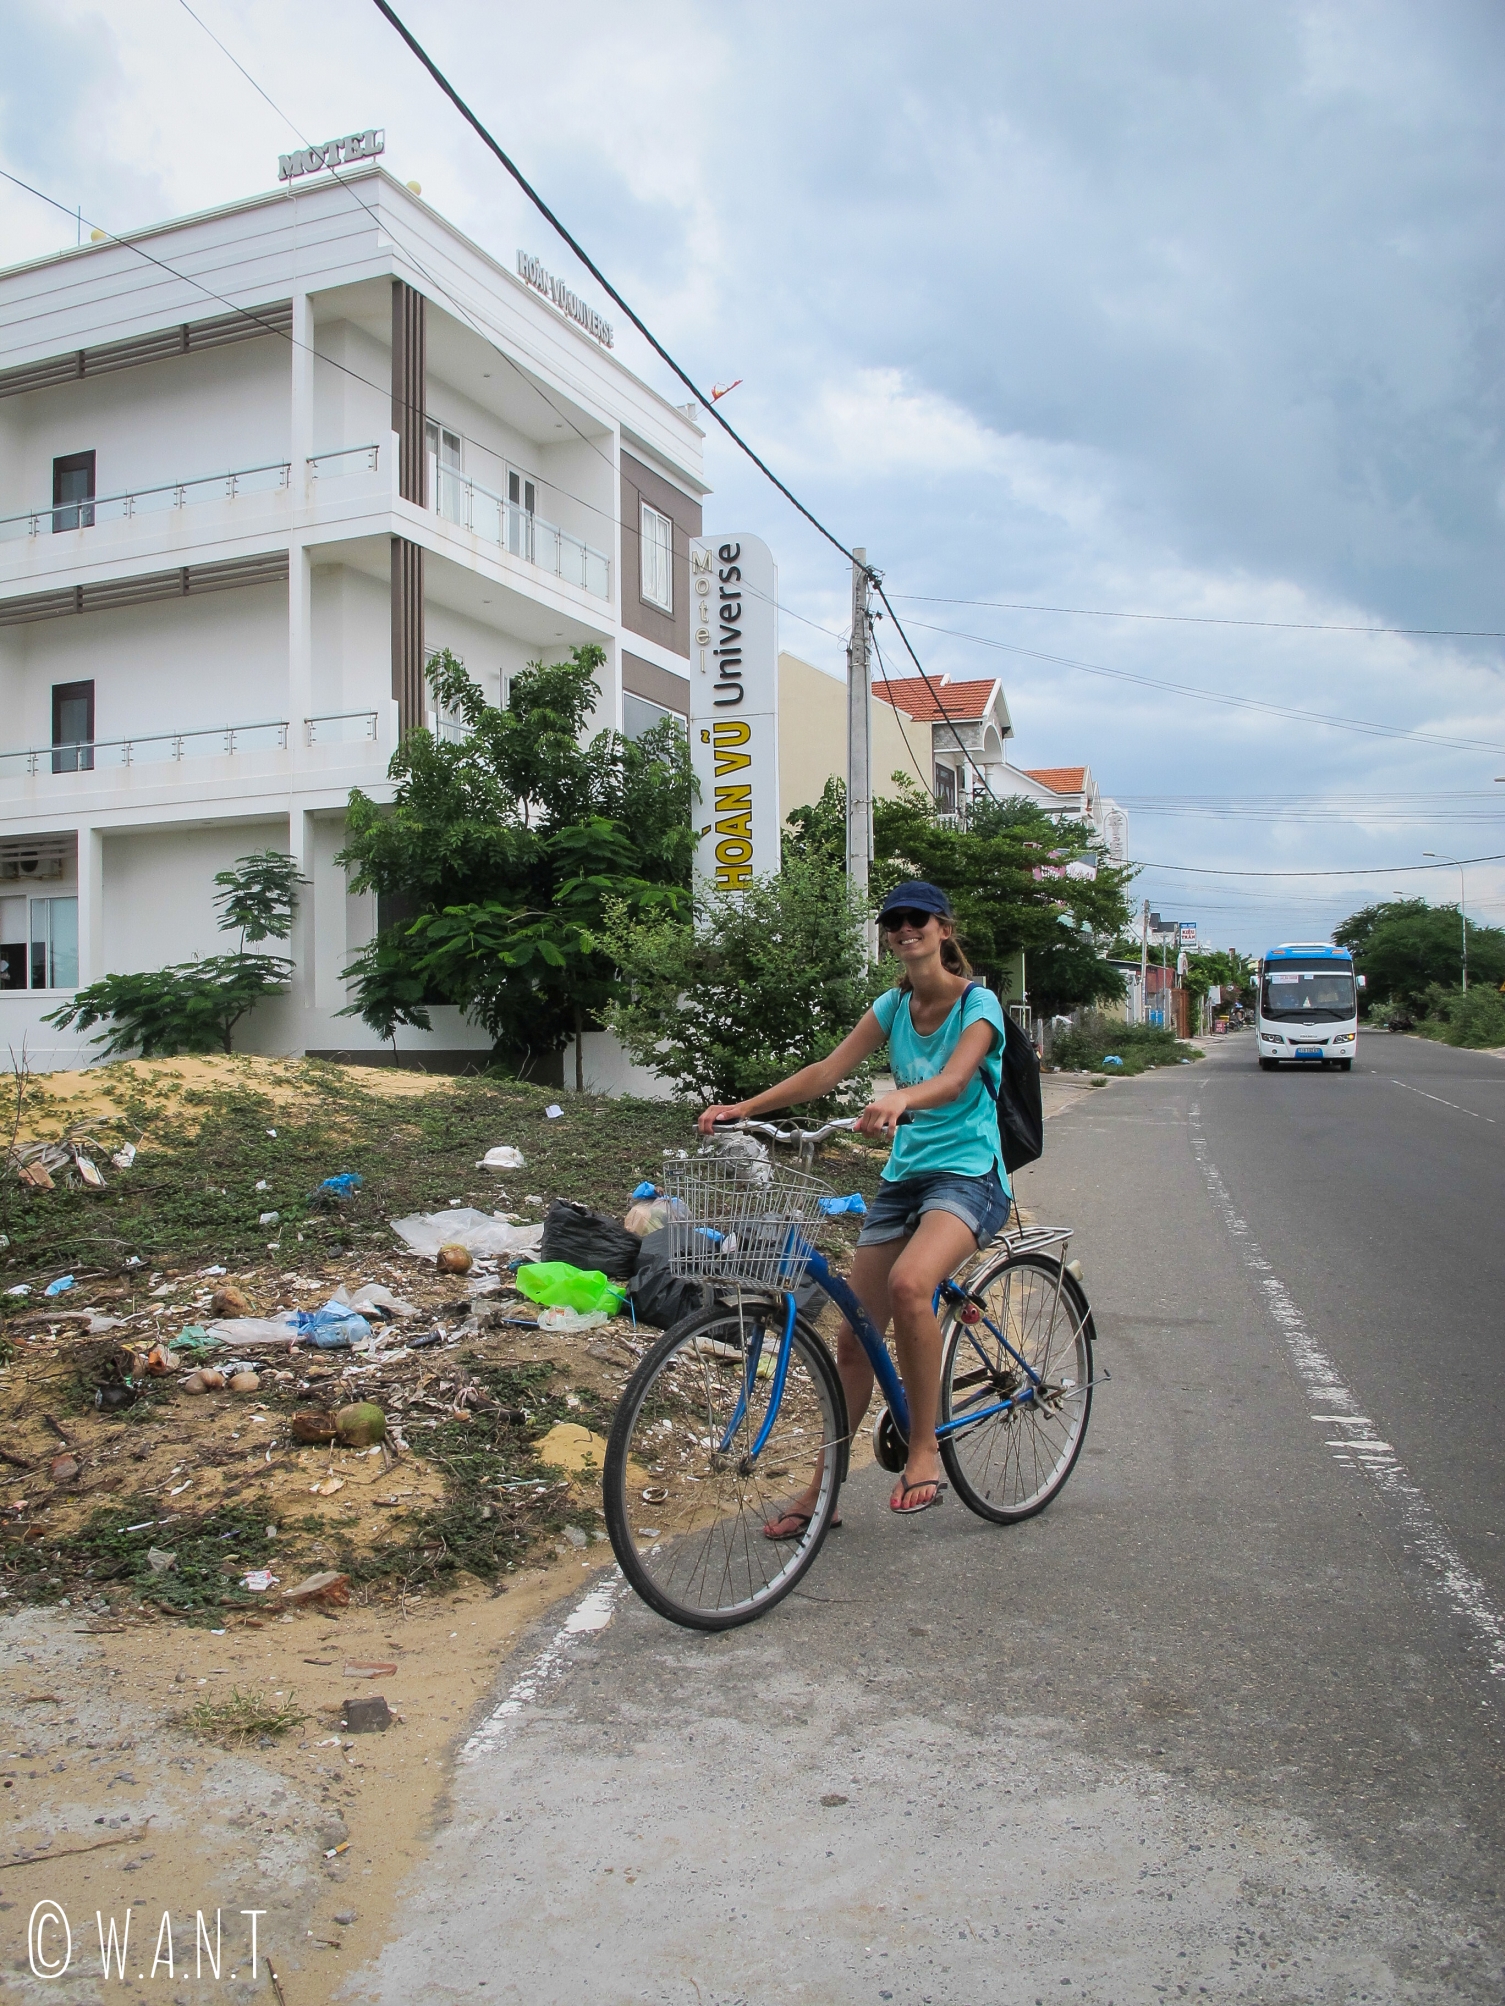 Hôtels fraîchement construits, bus et déchets sont typiques des rues de Mui Ne